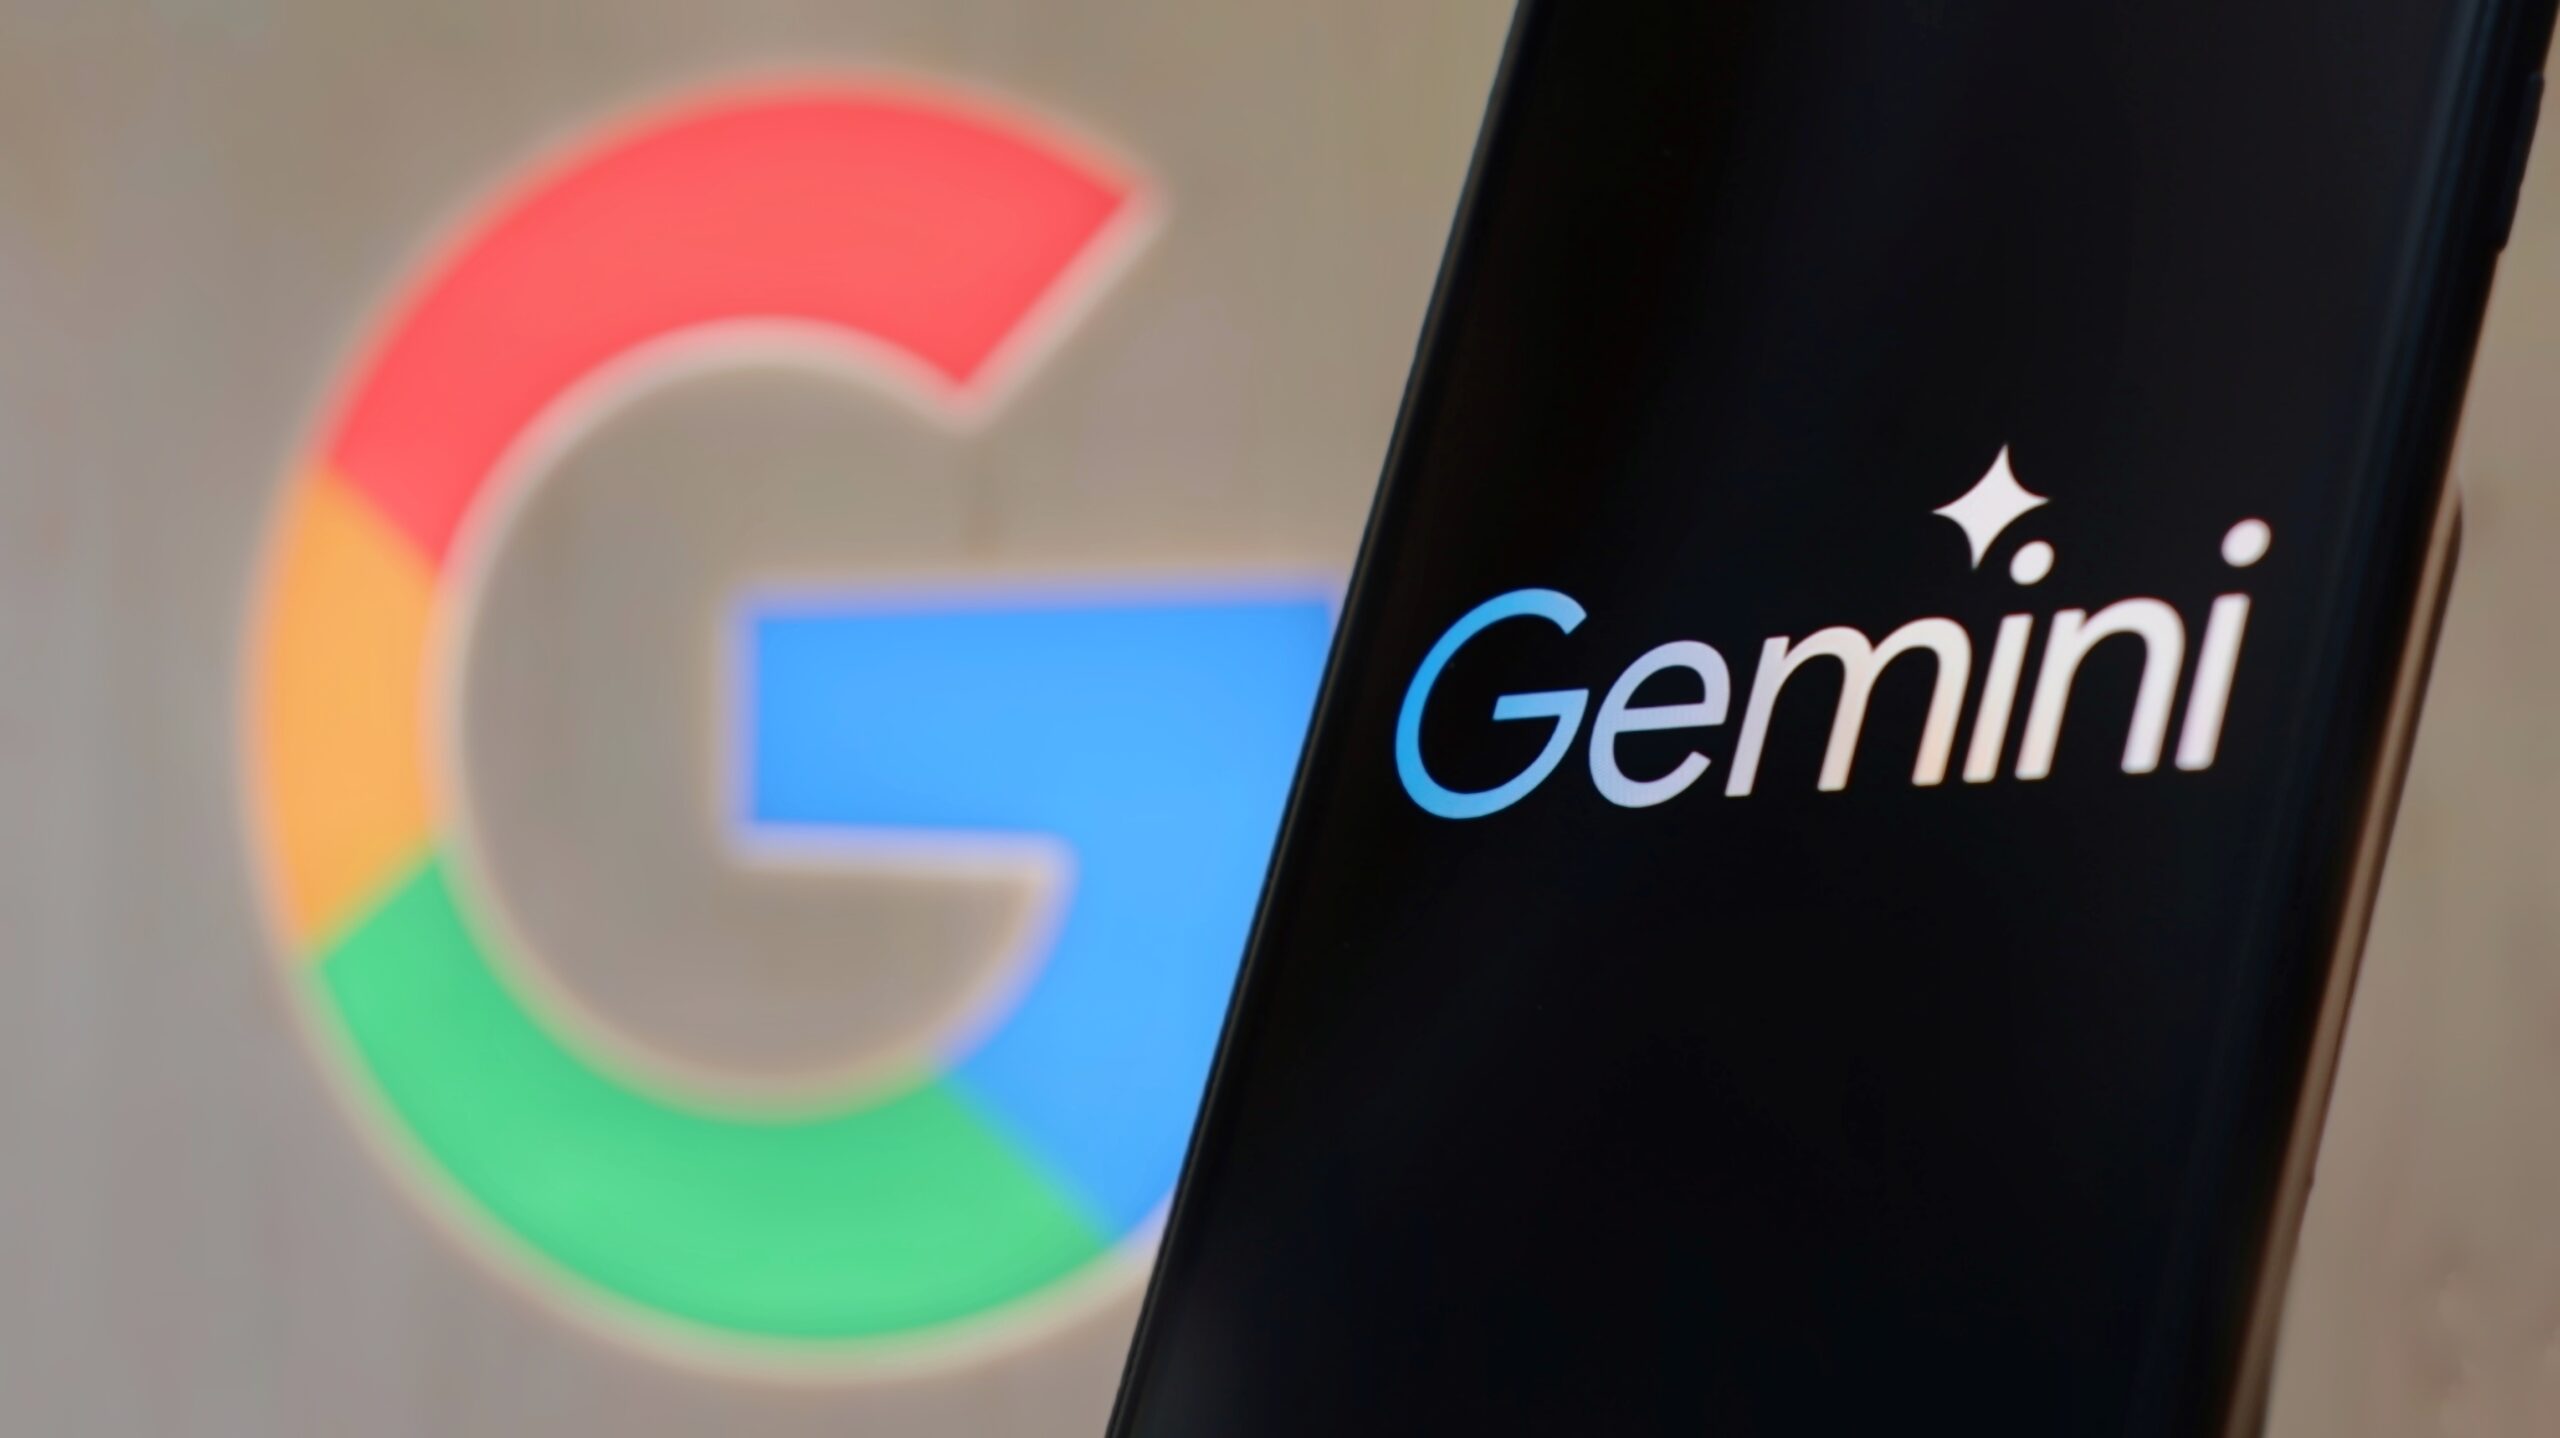 Logo Google w tle, napis "Gemini" na ekranie smartfona na pierwszym planie.